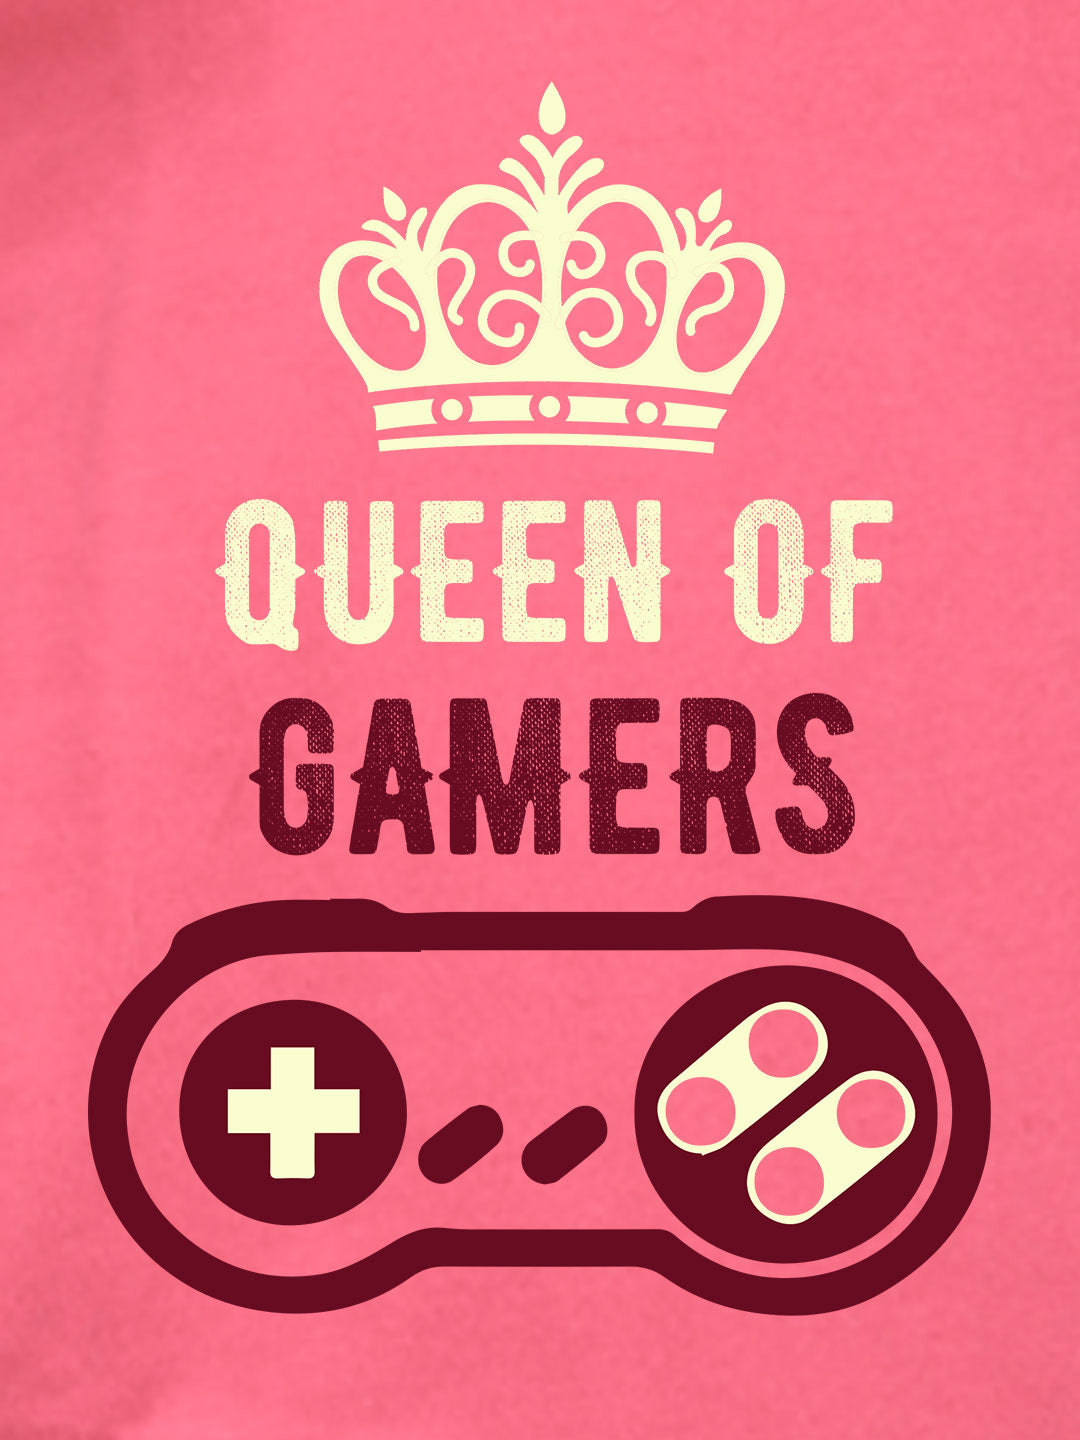 Queen of Gamers - Premium Round Neck Cotton Tees for Juniors - Magenta